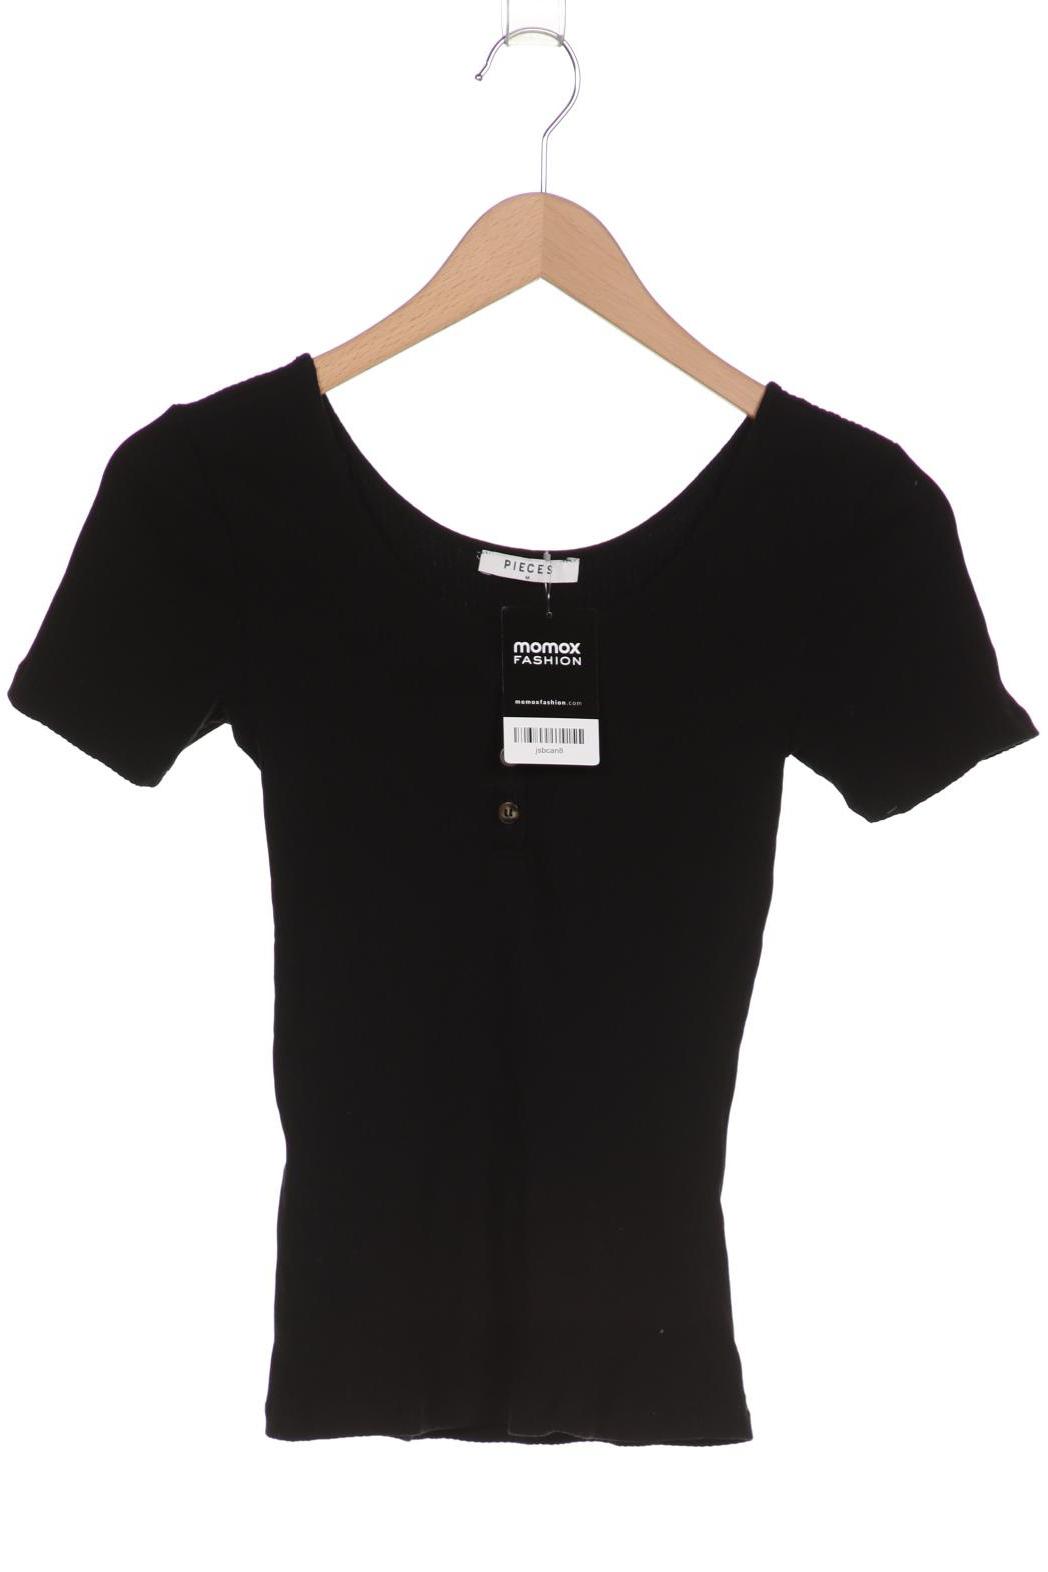 pieces Damen T-Shirt, schwarz von Pieces